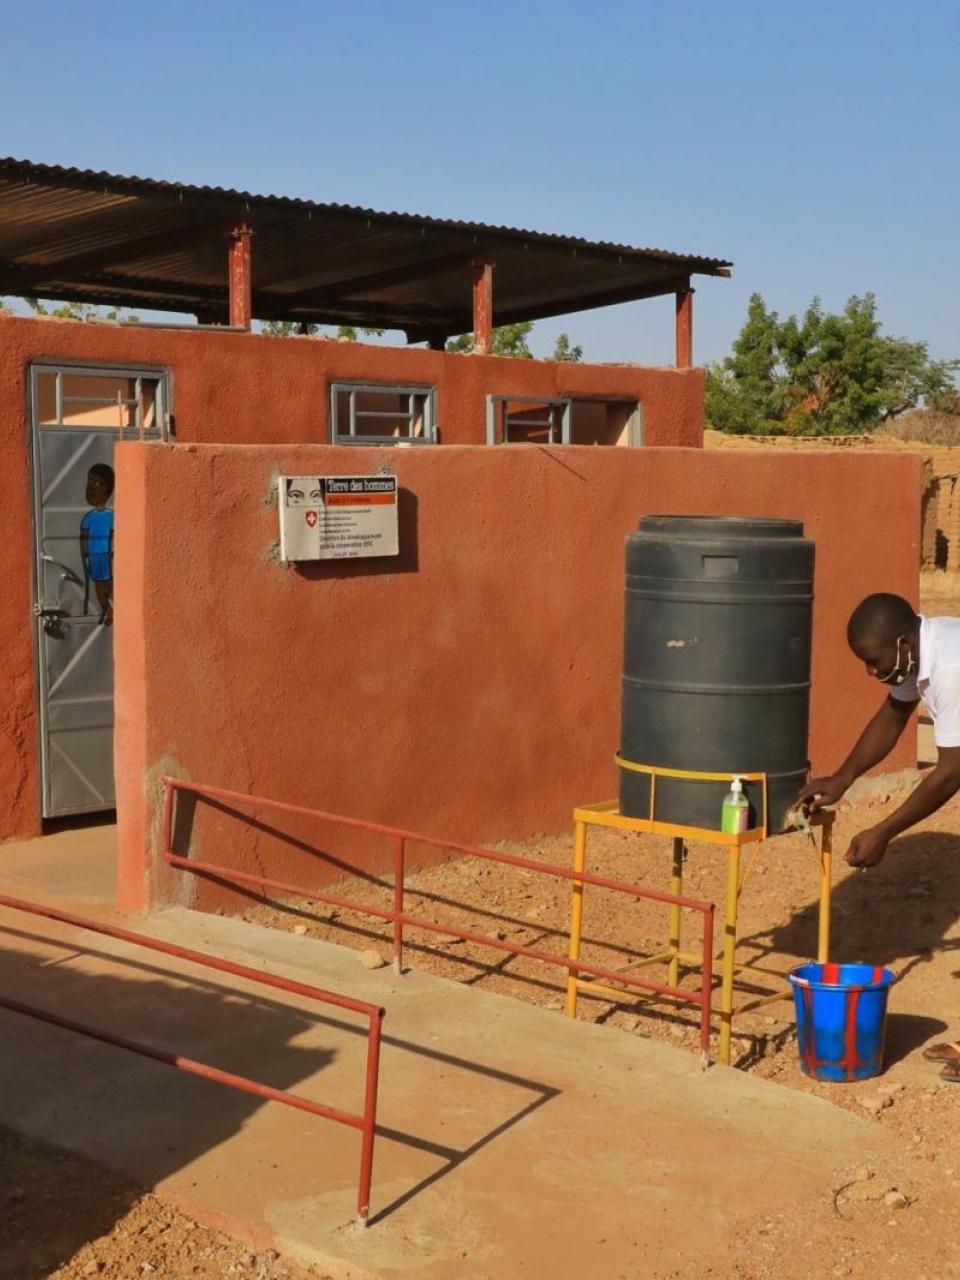 Das Schweizer Konsortium für Wasserversorgung und Abwasserentsorgung bemüht sich um eine menschenwürdige, an die Mobilität aller Menschen in Mali angepasste sanitäre Infrastruktur © Terre des hommes